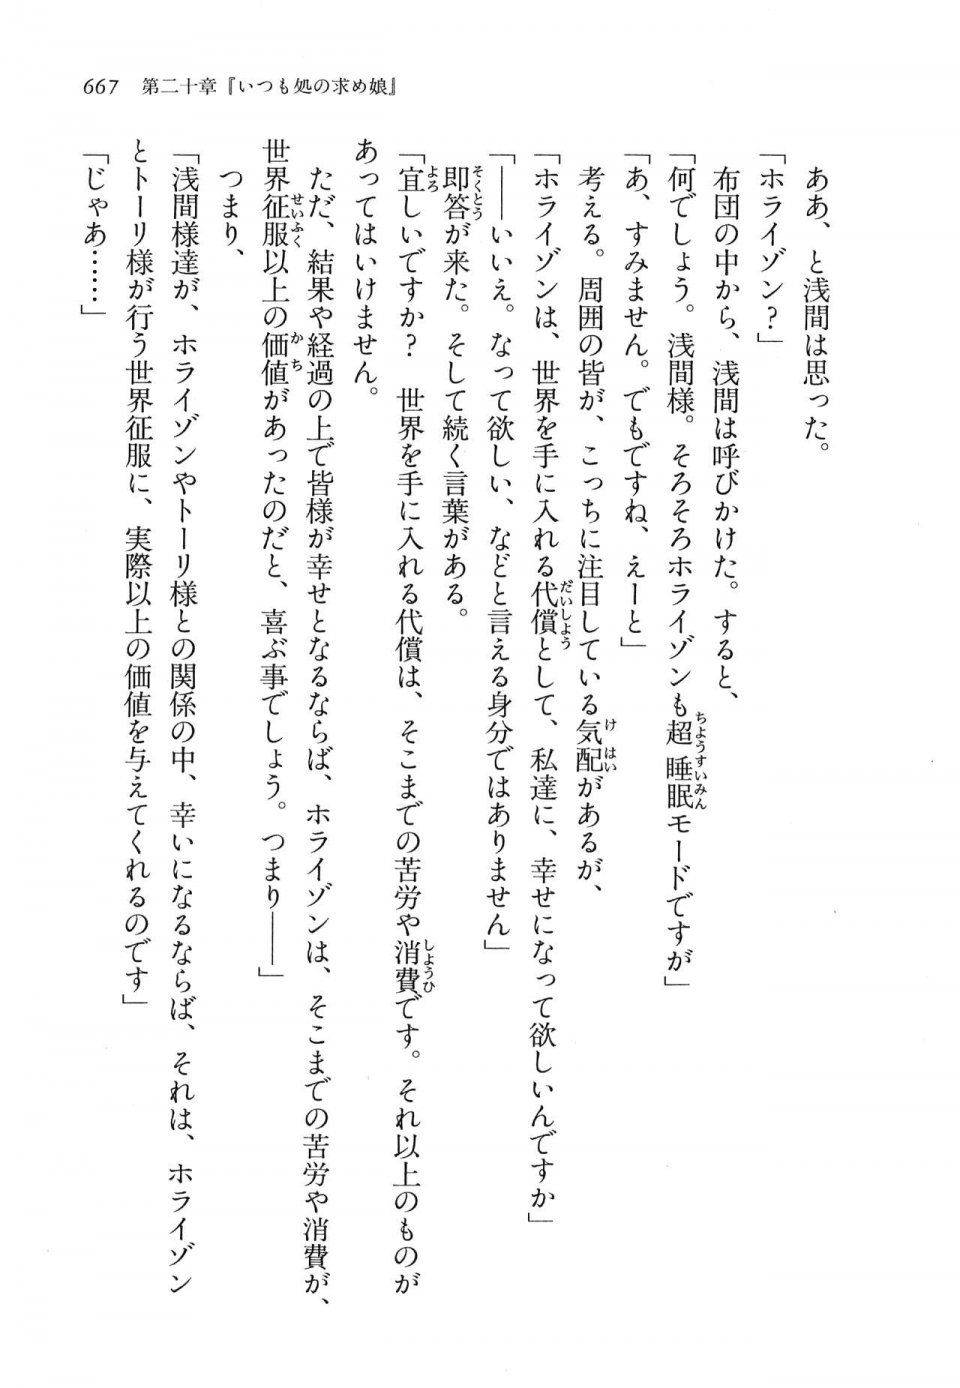 Kyoukai Senjou no Horizon LN Vol 16(7A) - Photo #667